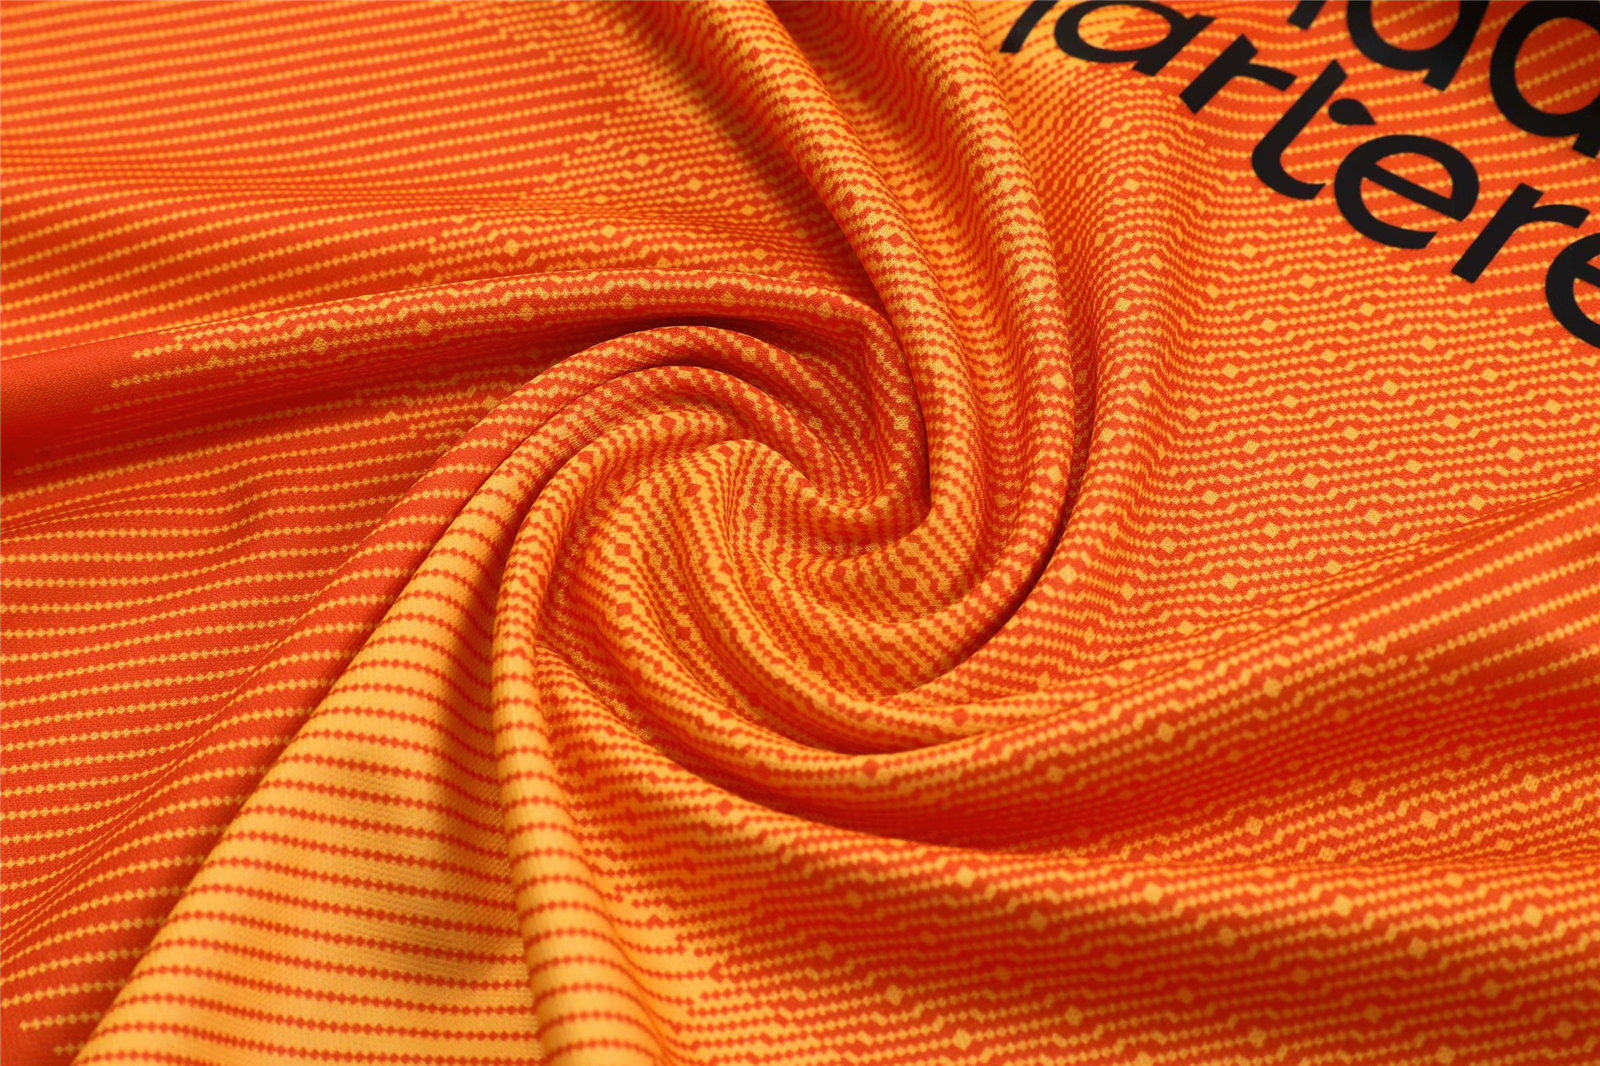 Men's Liverpool Goalkeeper Orange Jersey + Short 21/22